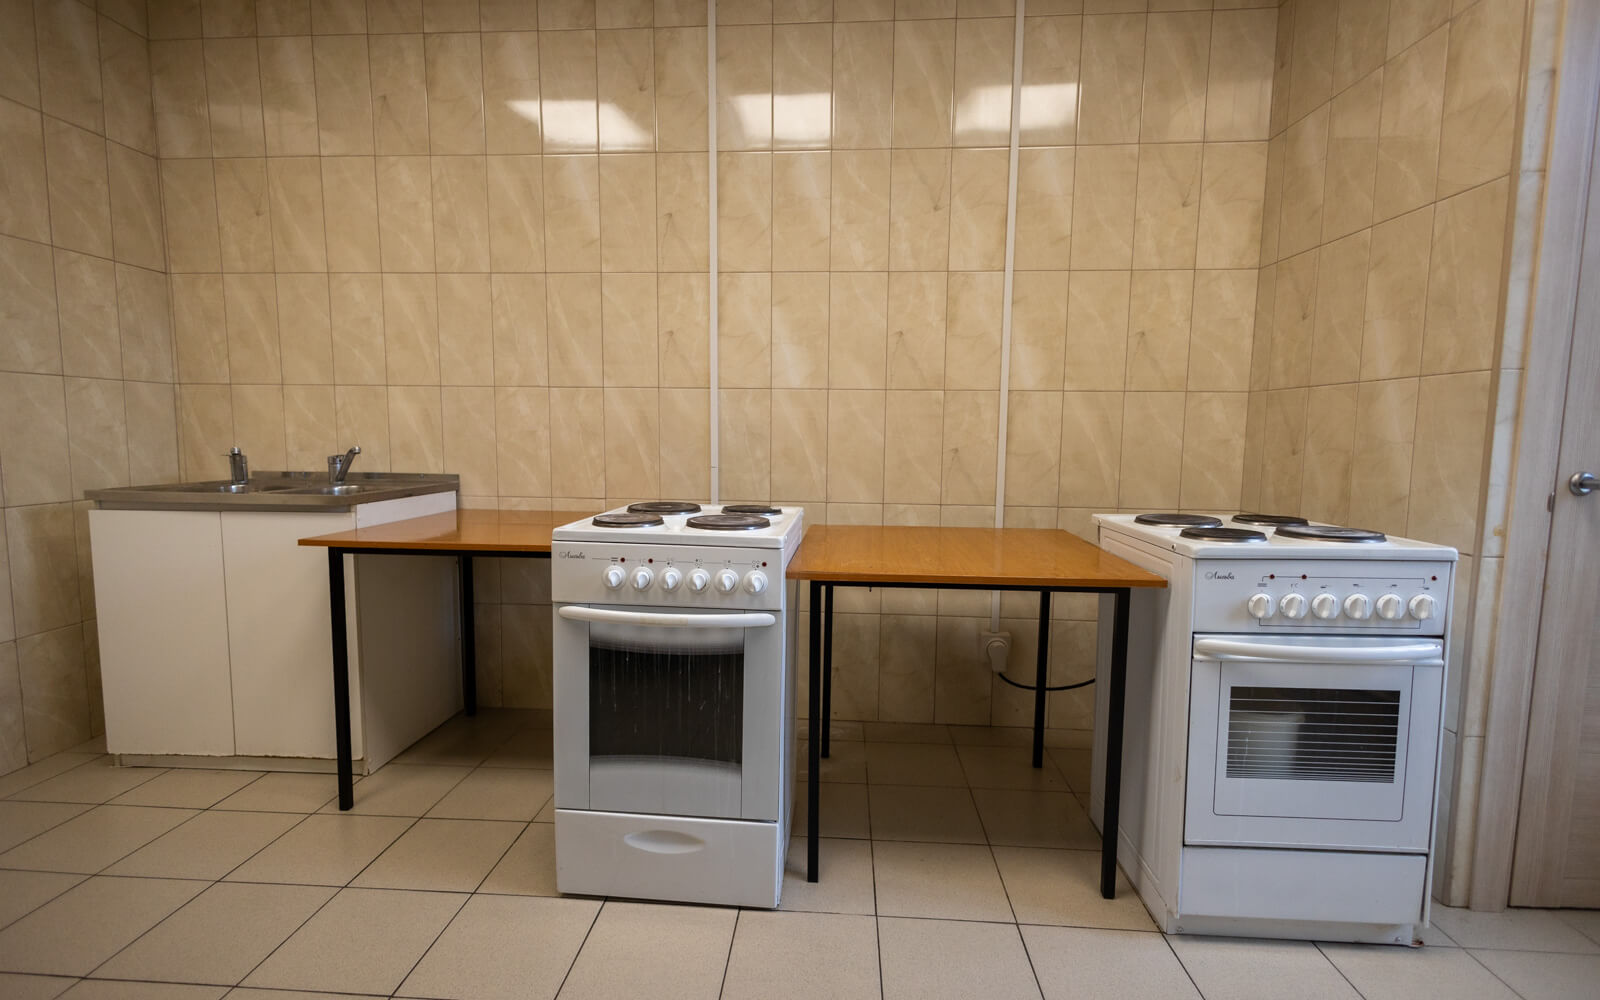 На кухнях в общежитиях есть кухонные плиты и раковины для посуды, чтобы обеспечить комфортное приготовление еды.